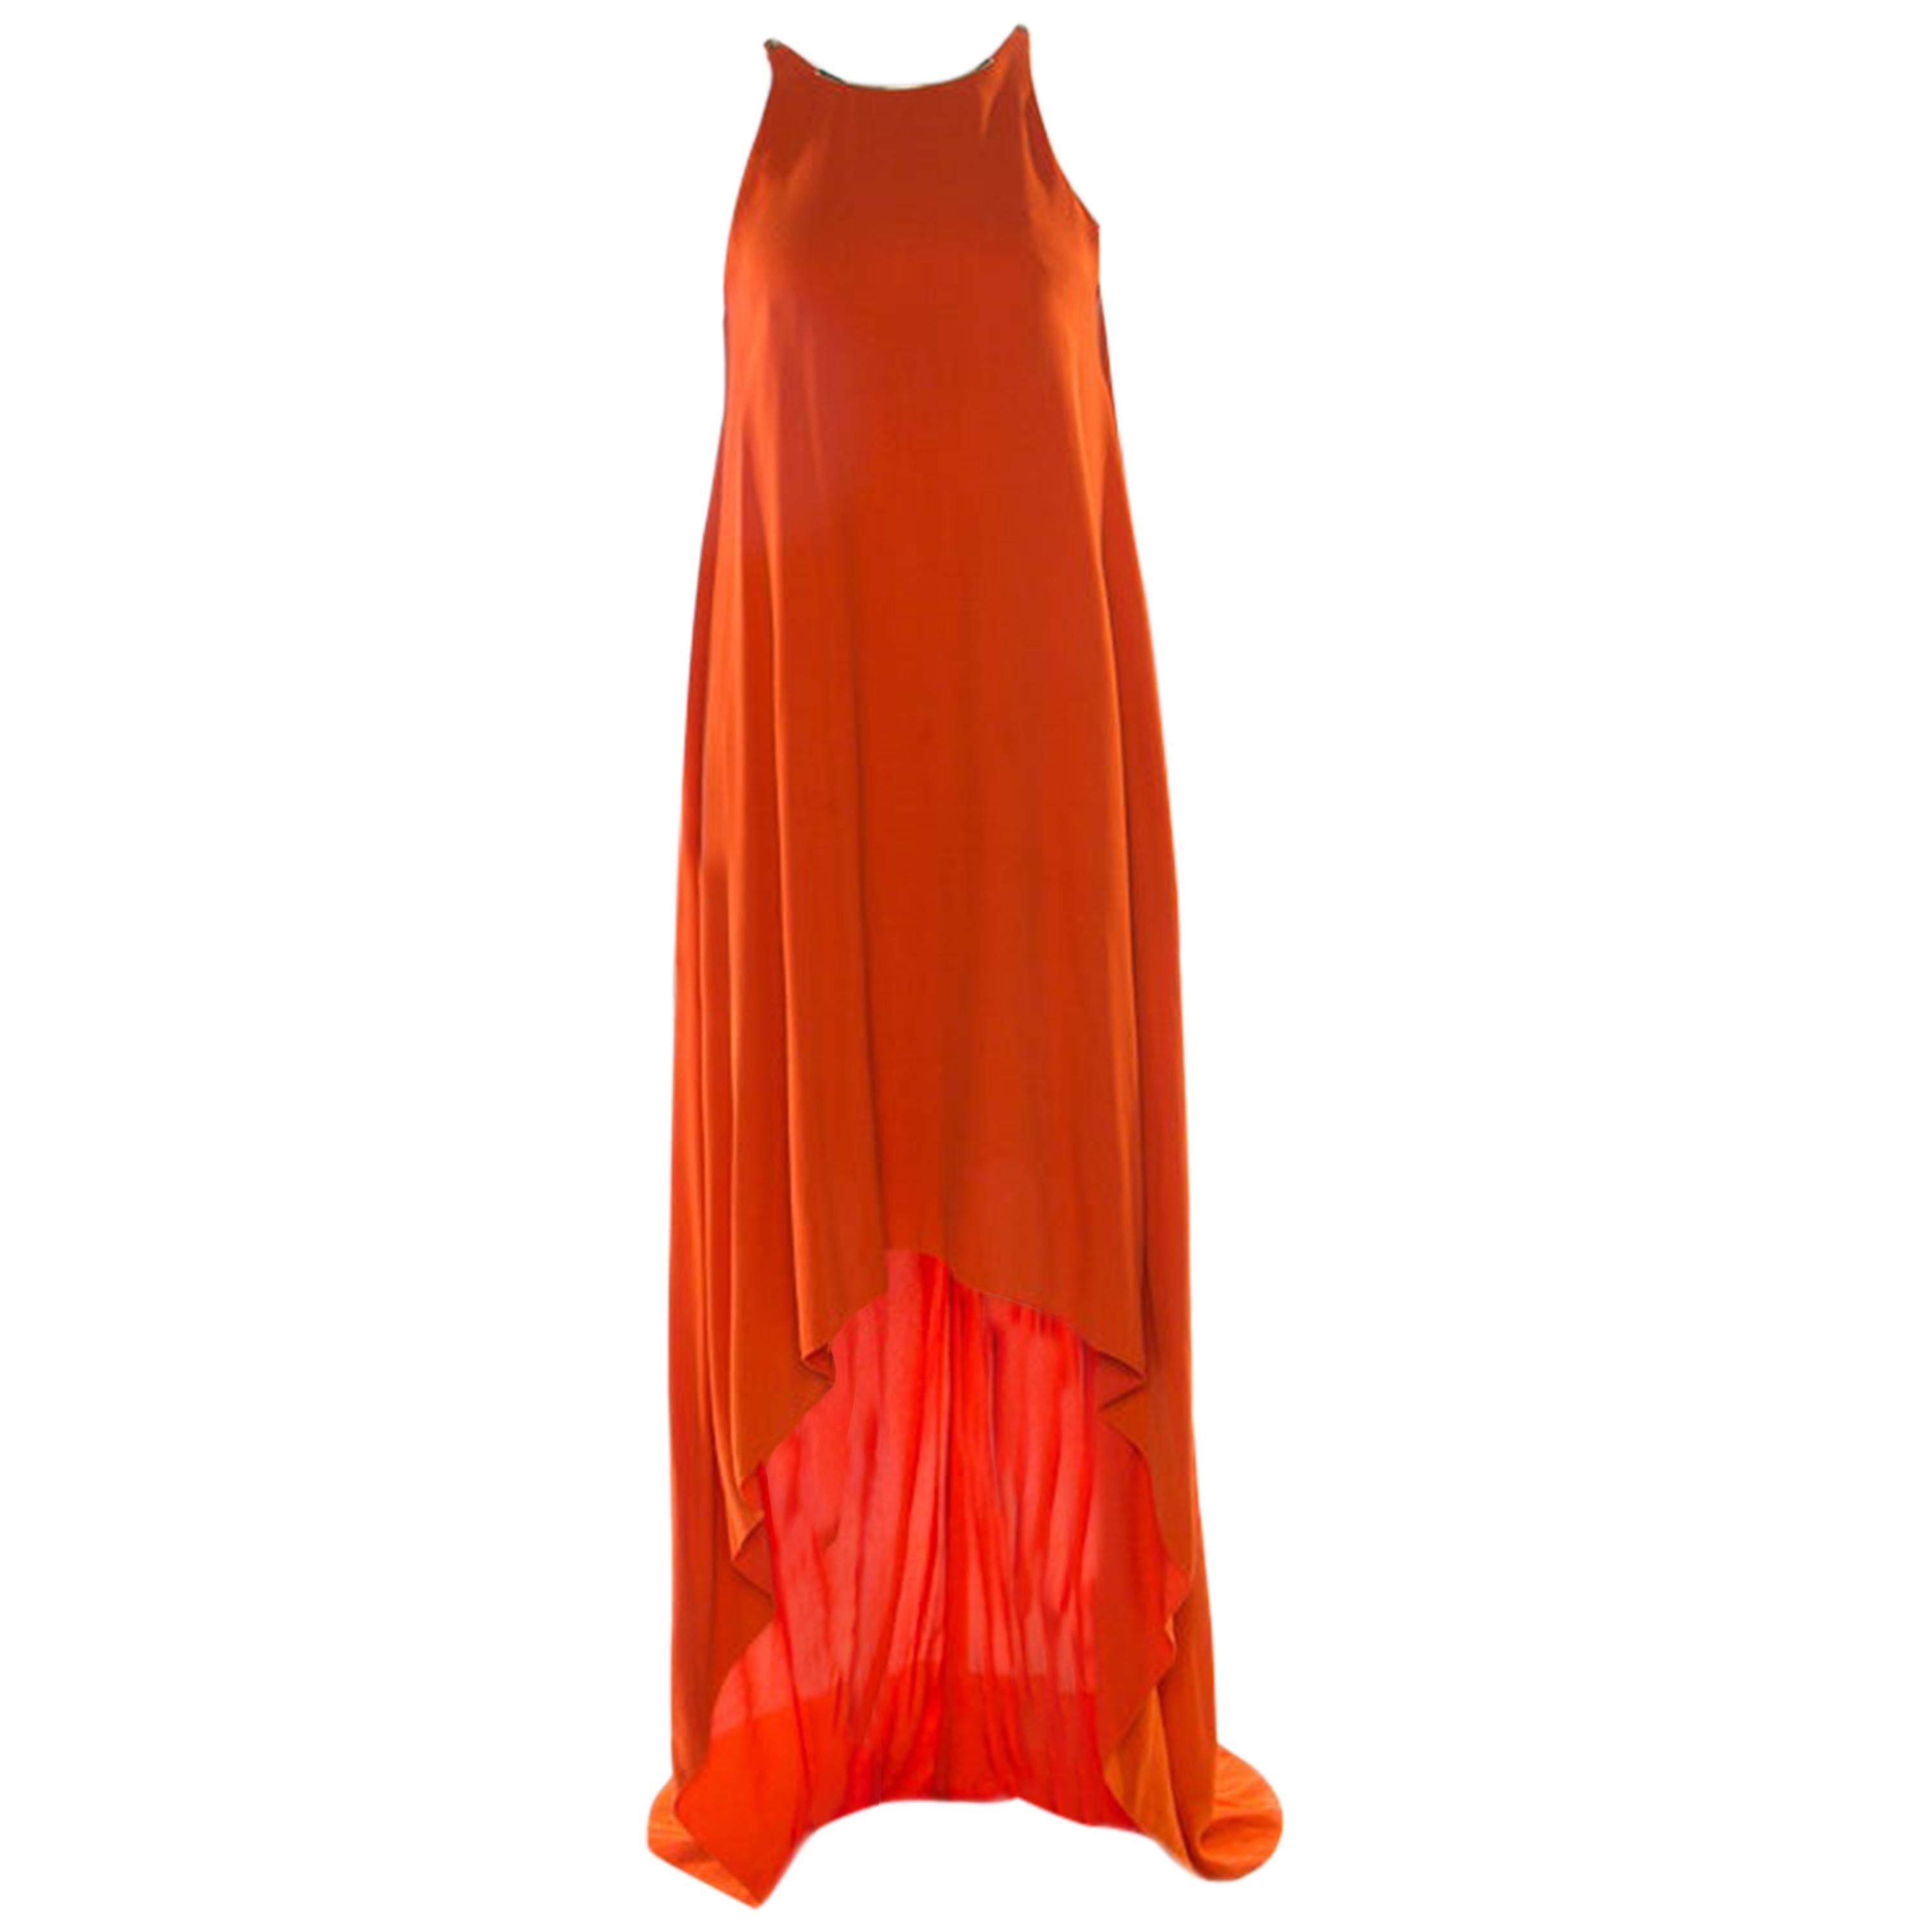 Lanvin - Robe sans manches en crêpe orange à col métallique et ornements, taille M